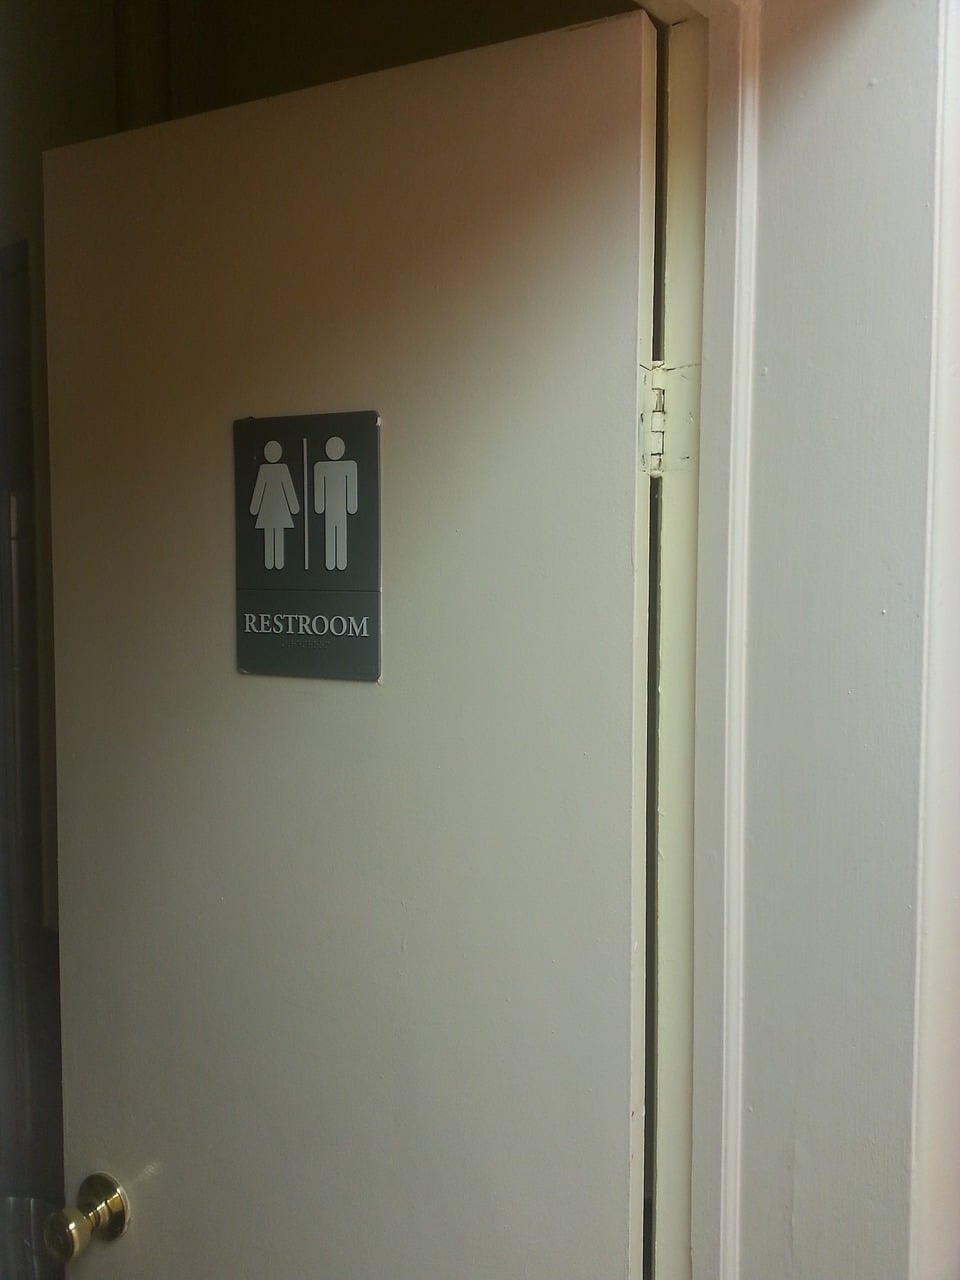 all-gender restrooms